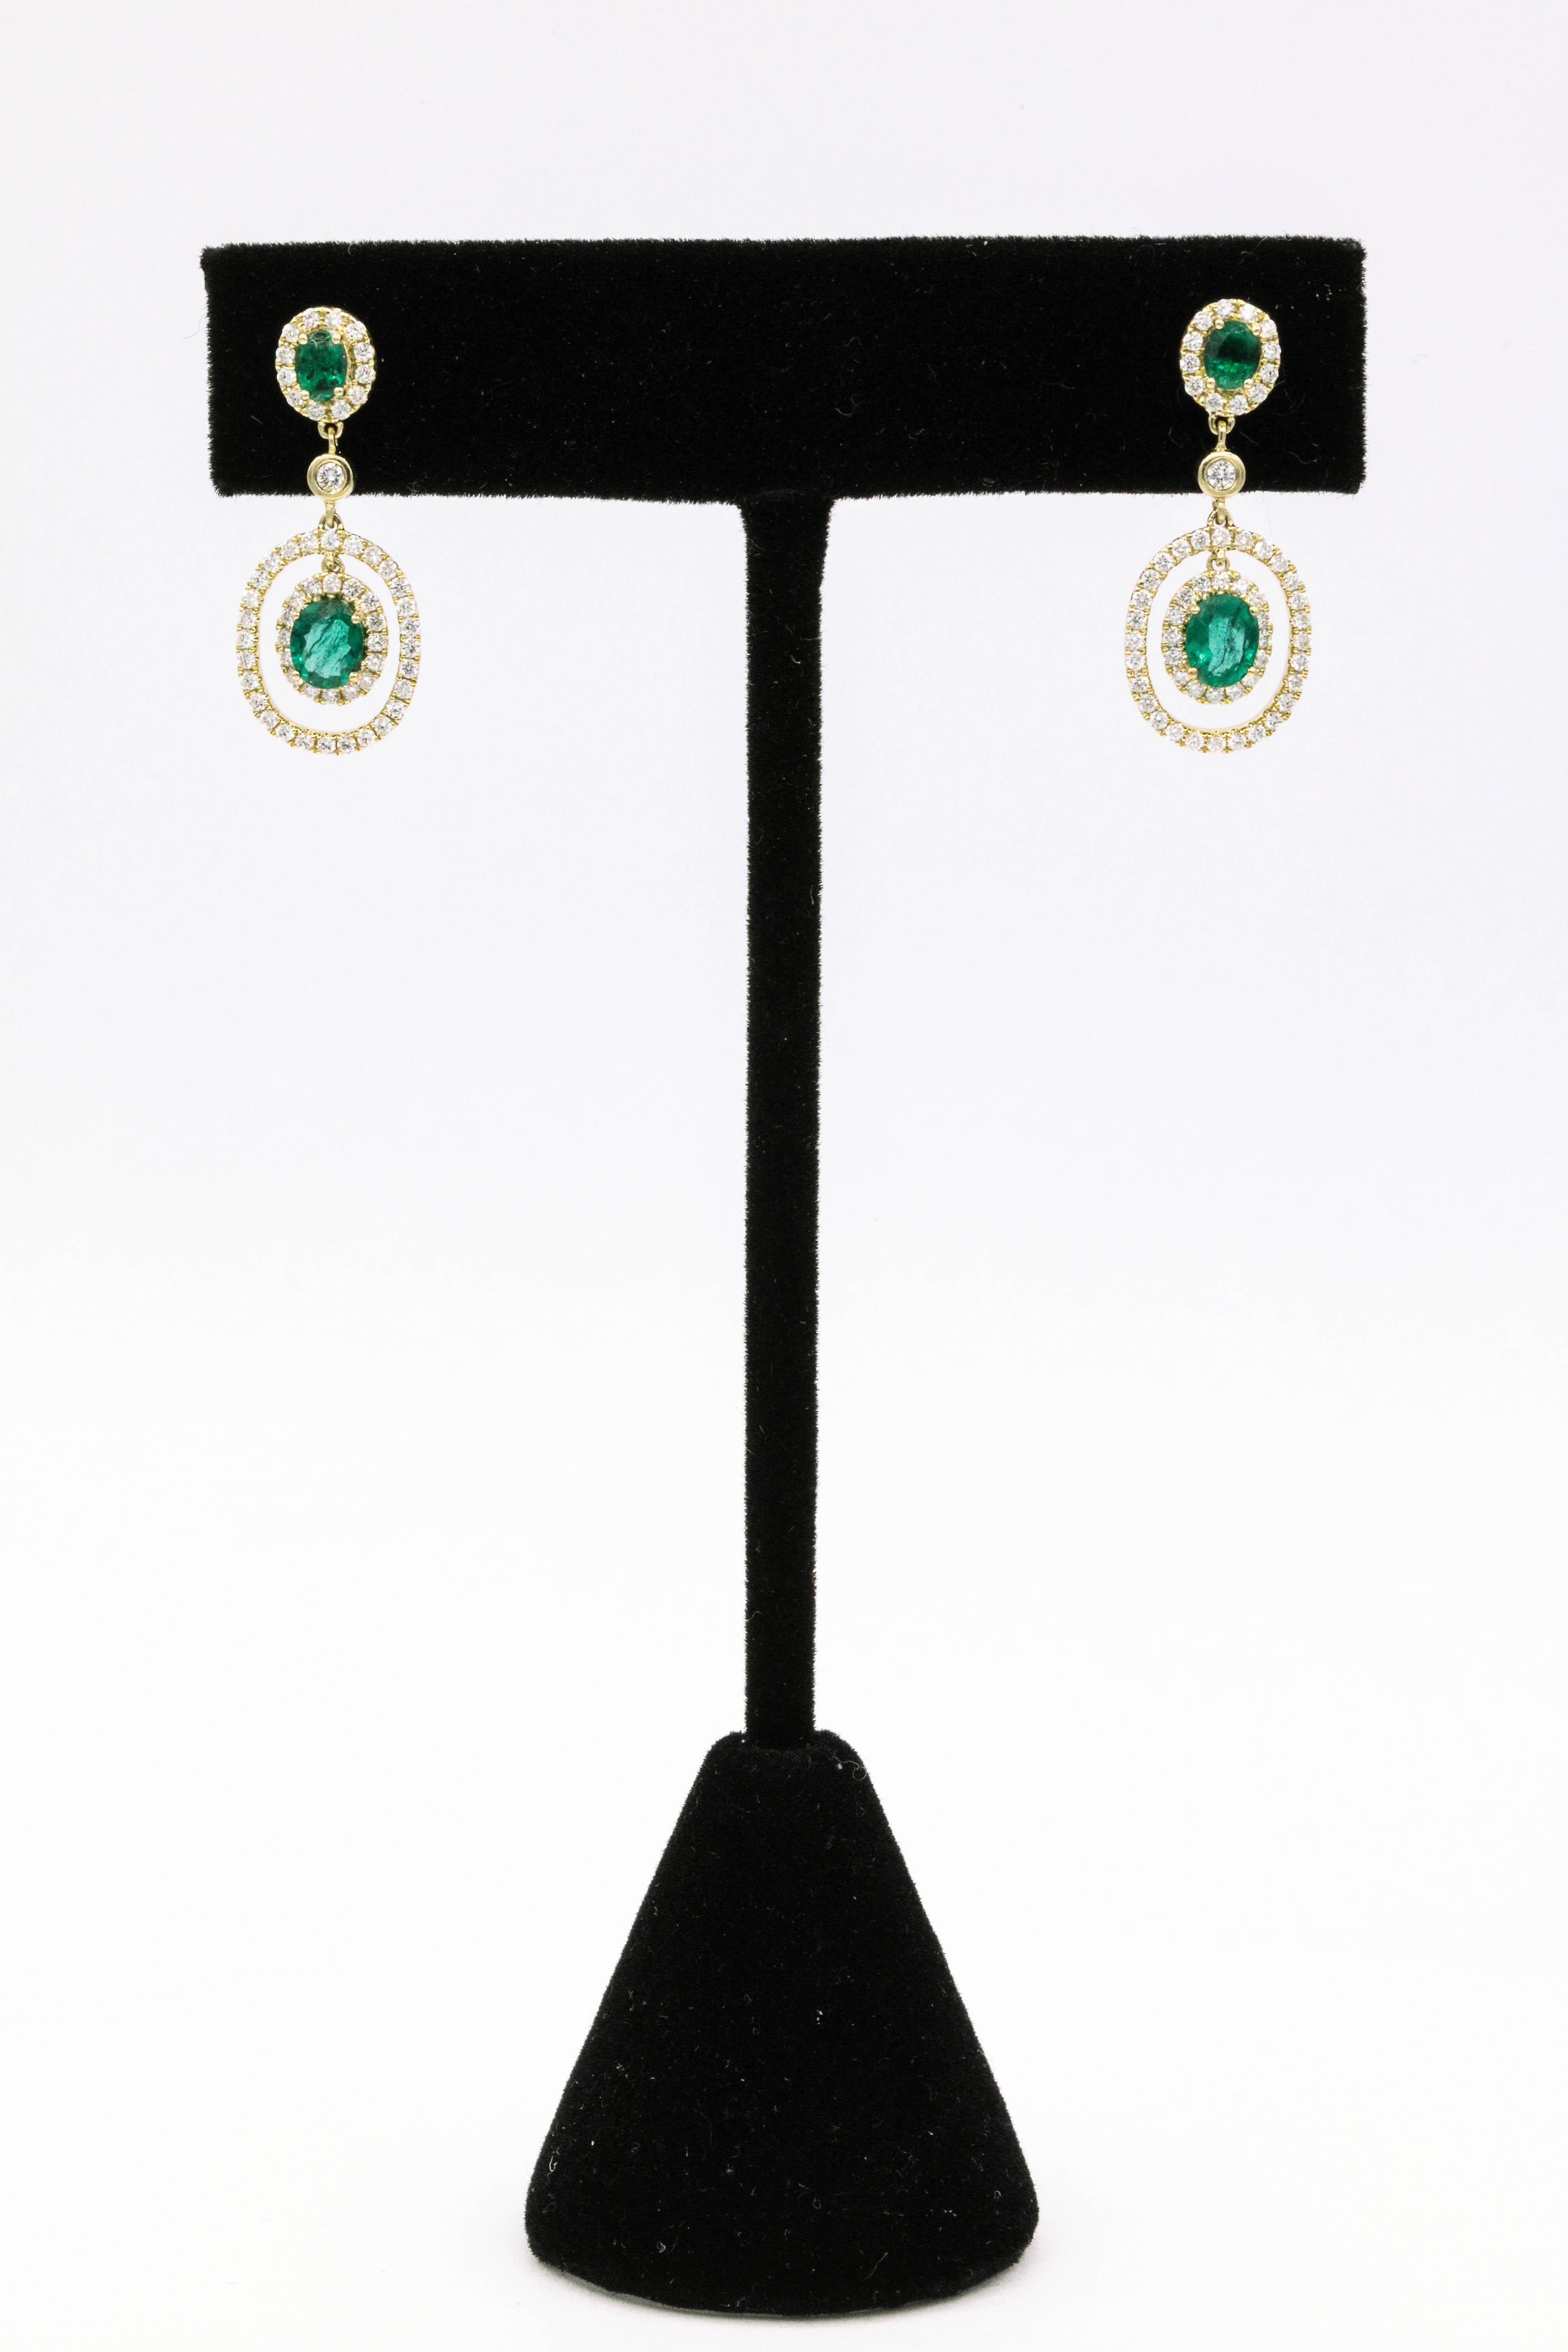 Oval Cut Emerald Diamond Oval Shape Drop Earrings 1.79 Carat